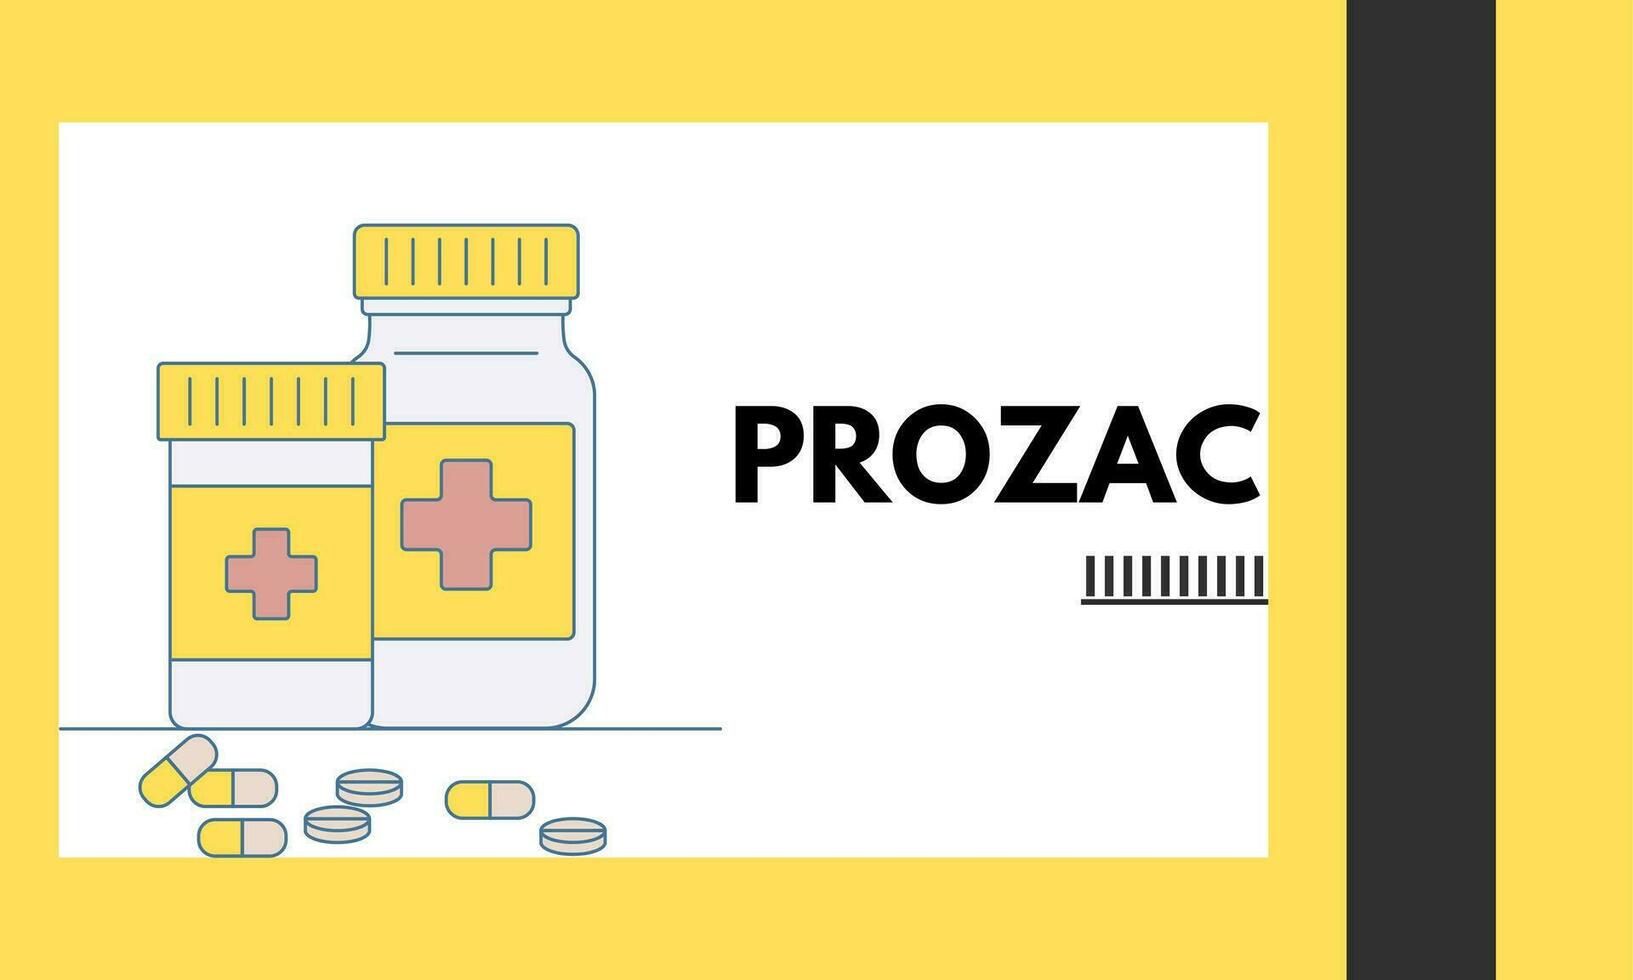 prozac medisch pillen in rx voorschrift drug fles voor mentaal Gezondheid vector illustratie